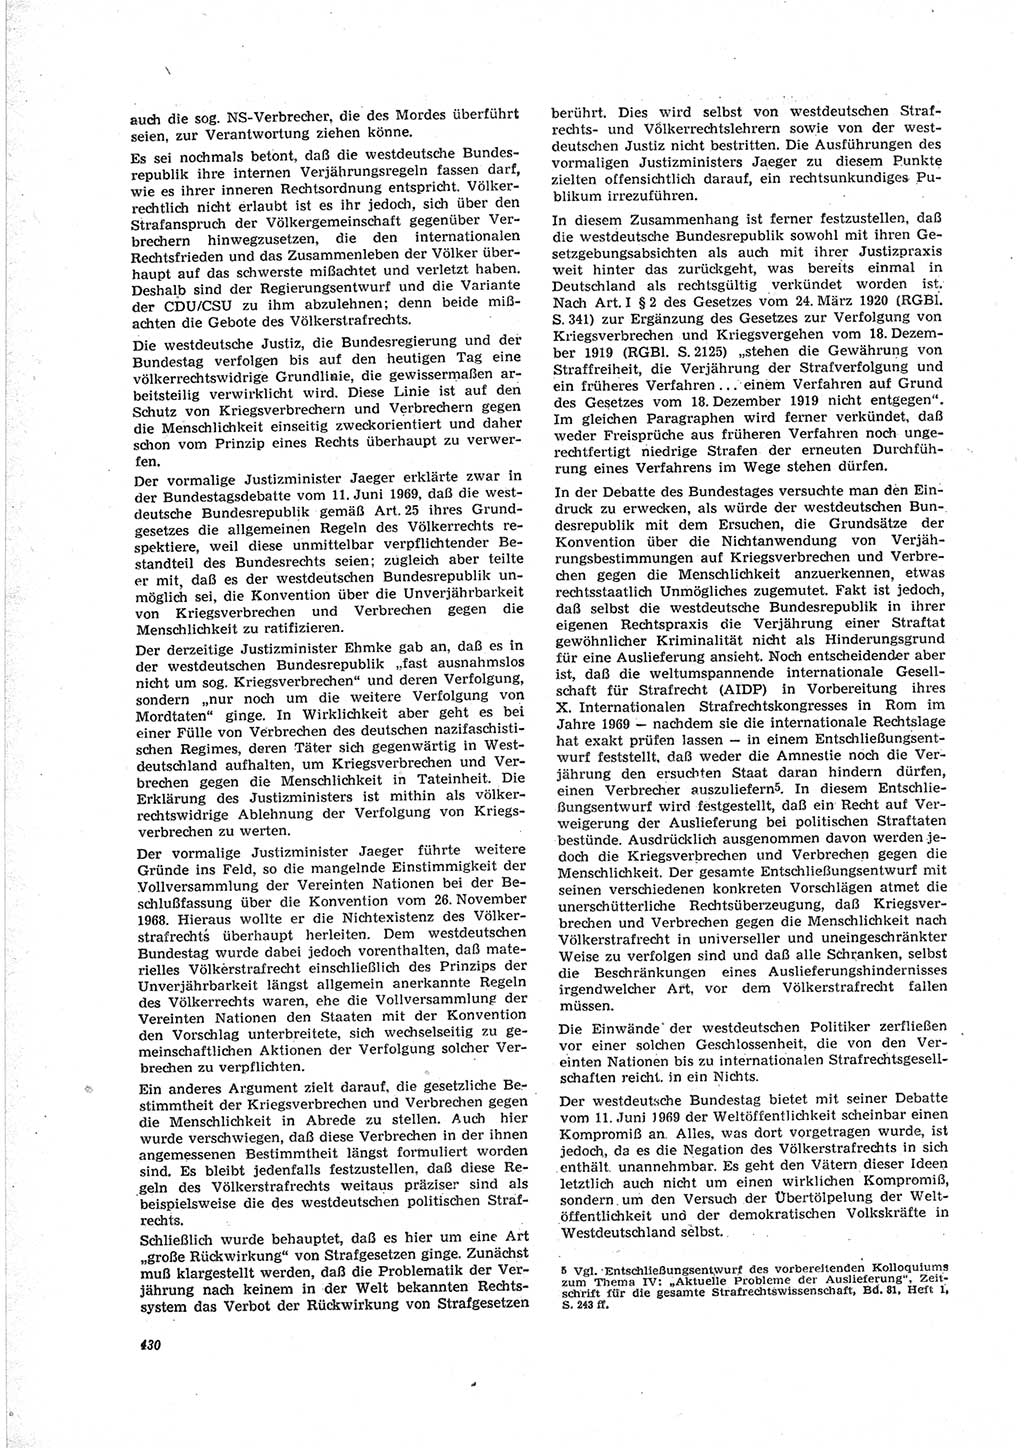 Neue Justiz (NJ), Zeitschrift für Recht und Rechtswissenschaft [Deutsche Demokratische Republik (DDR)], 23. Jahrgang 1969, Seite 430 (NJ DDR 1969, S. 430)